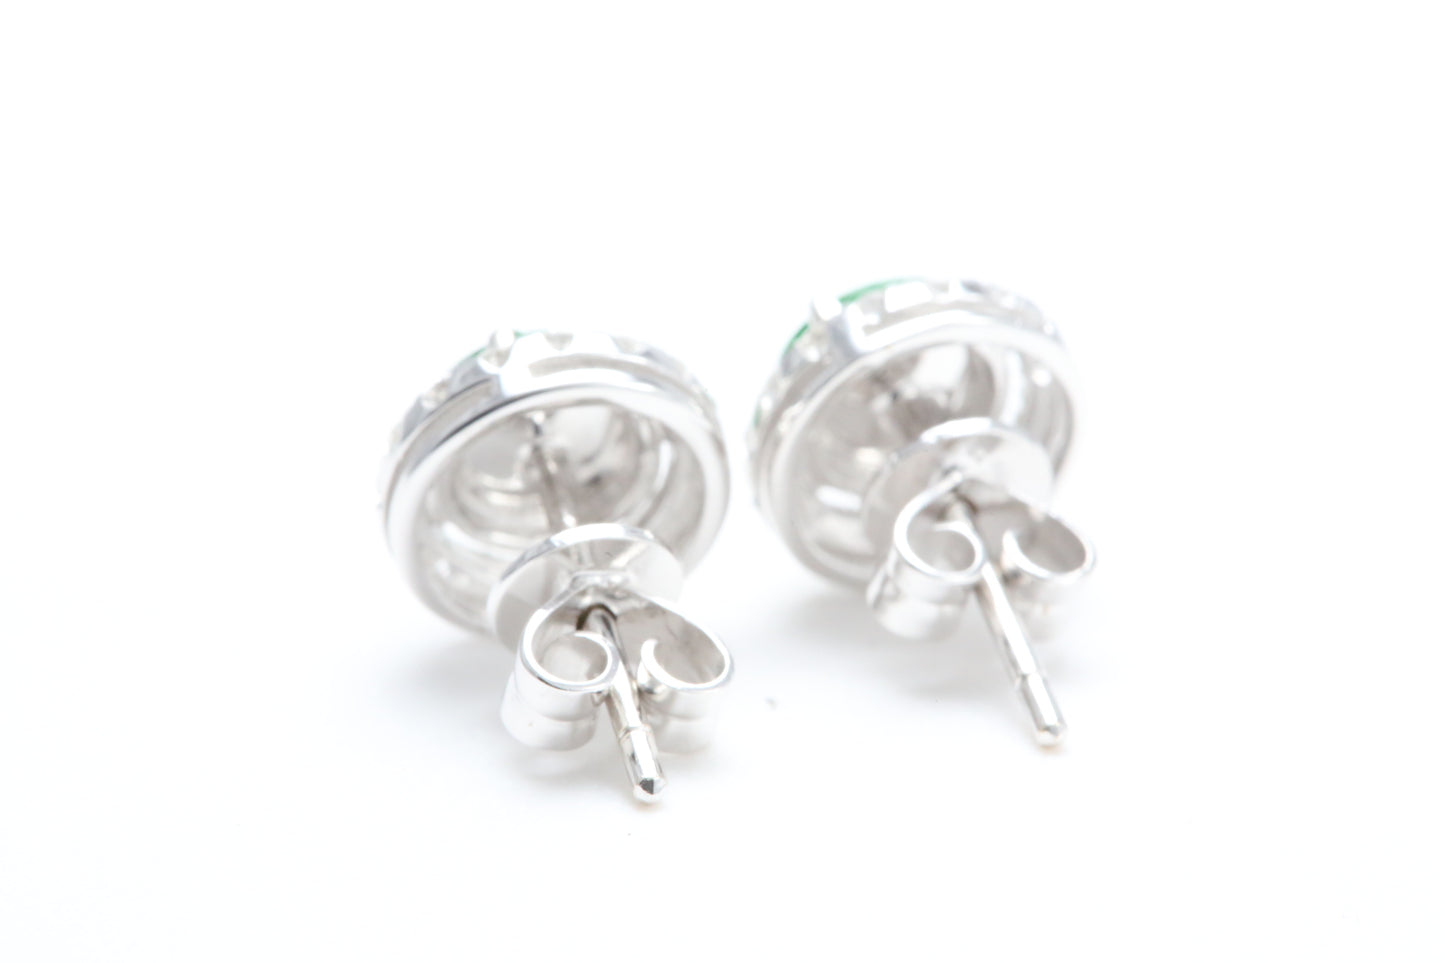 Jadeite and Diamond Halo Earrings